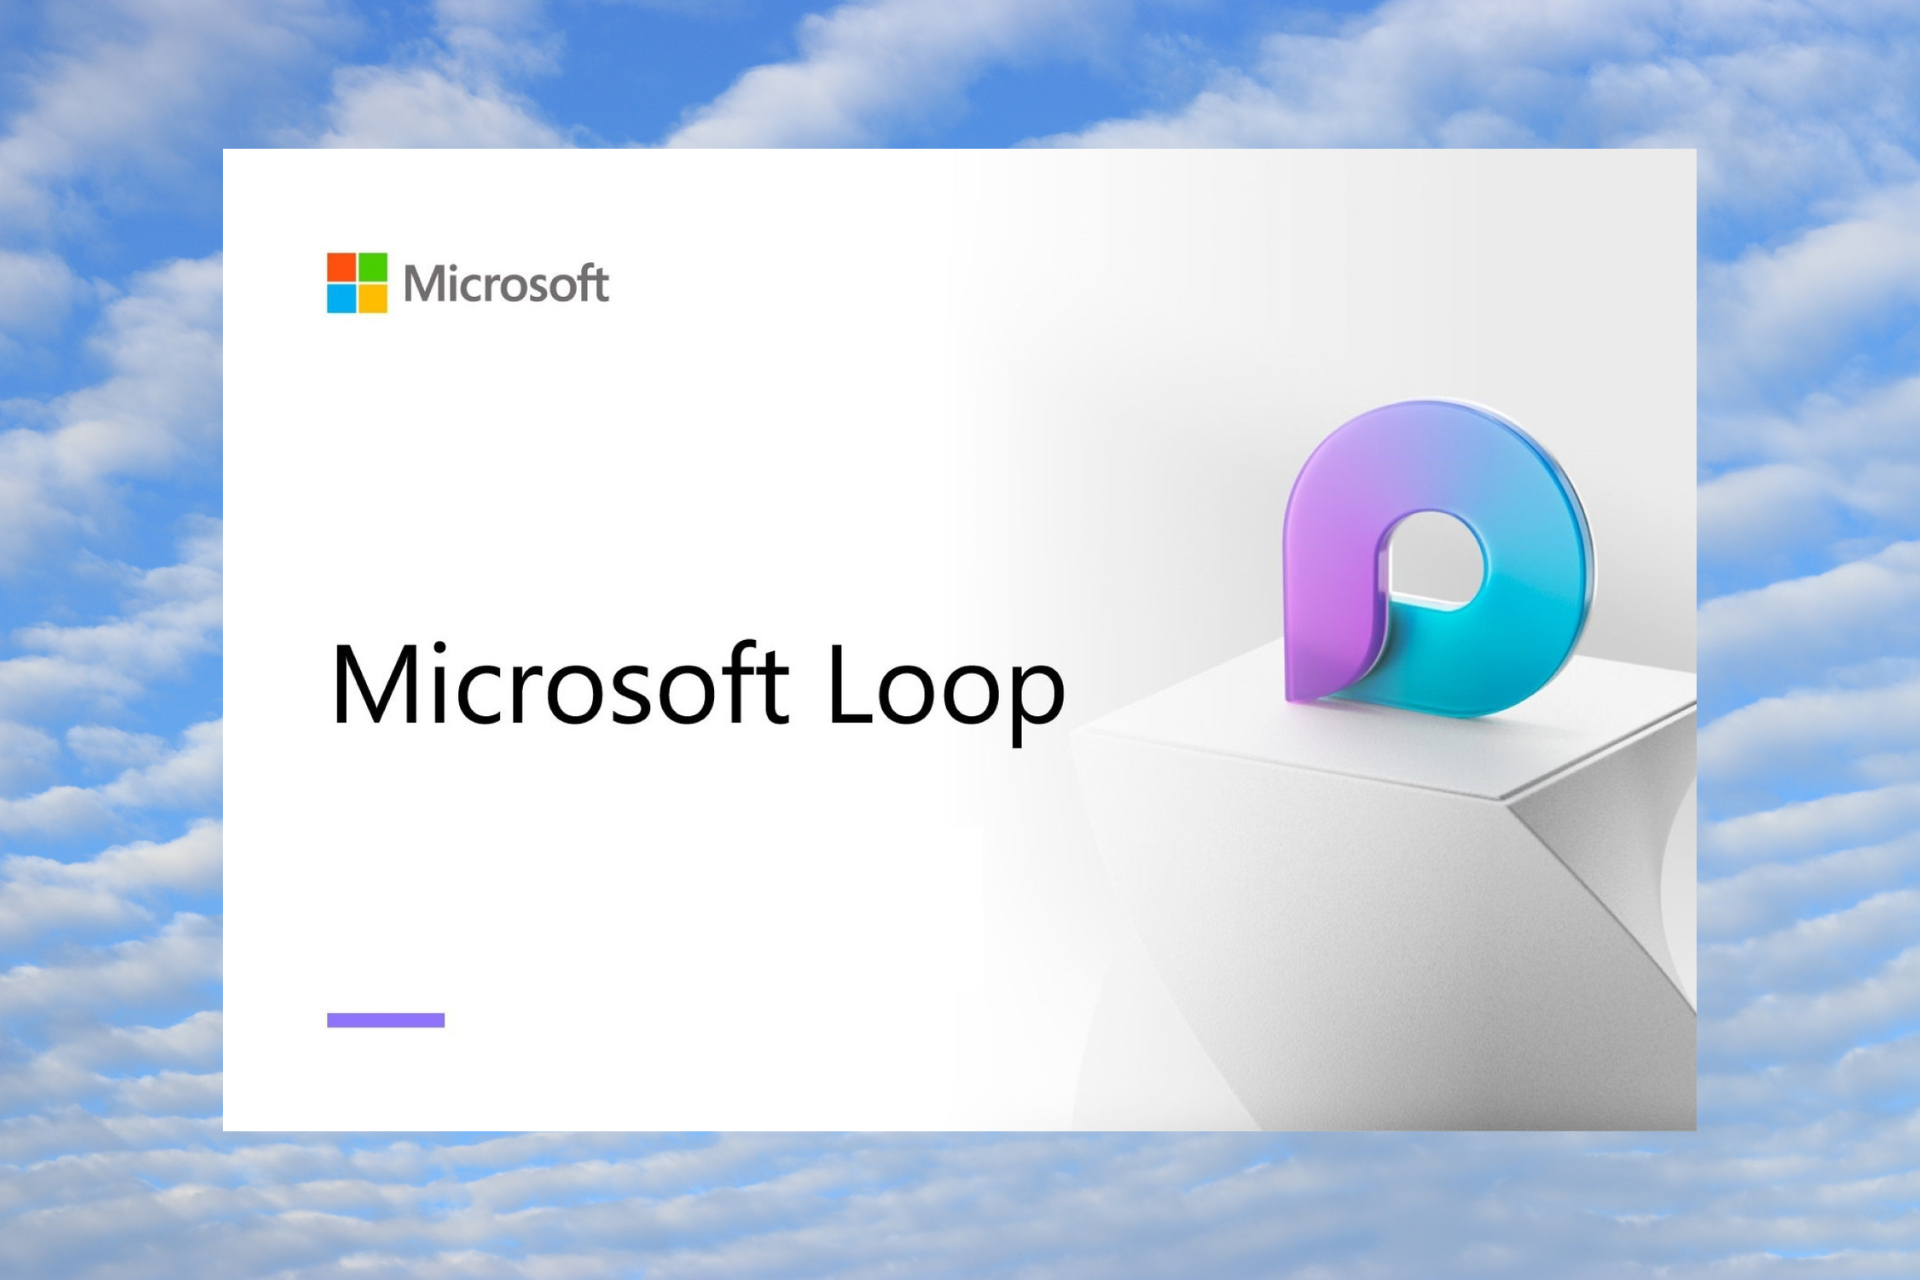 Microsoft Loop usage